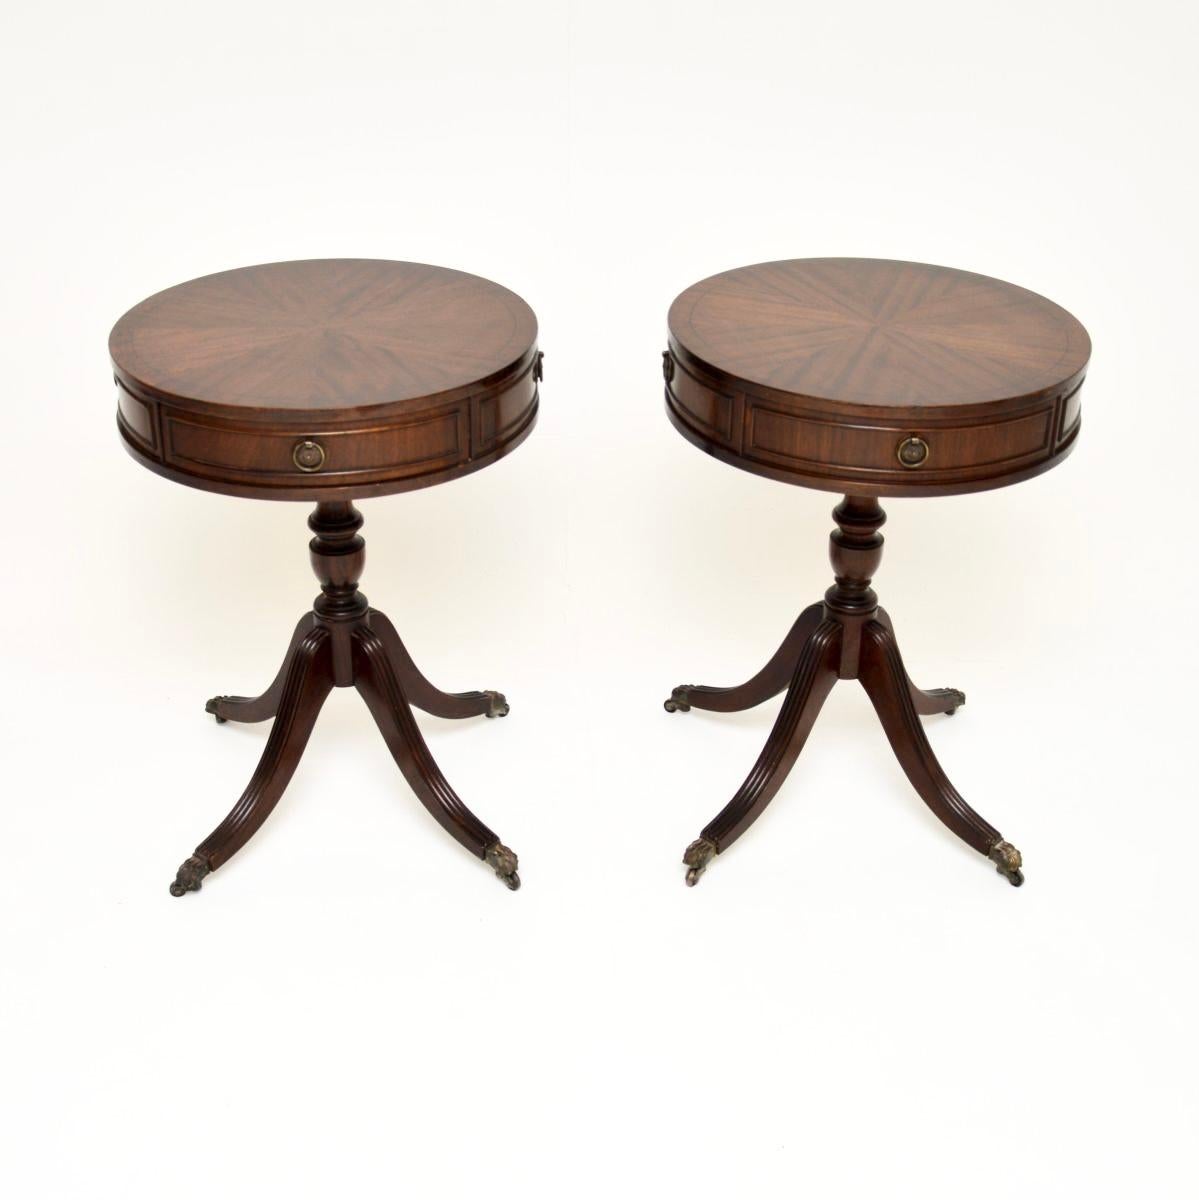 Une paire de tables d'appoint anciennes de style Regency, élégantes et très utiles. Fabriqués en Angleterre, ils datent des années 1950.

Les plateaux circulaires en forme de tambour sont dotés d'un tiroir de chaque côté et présentent de jolis